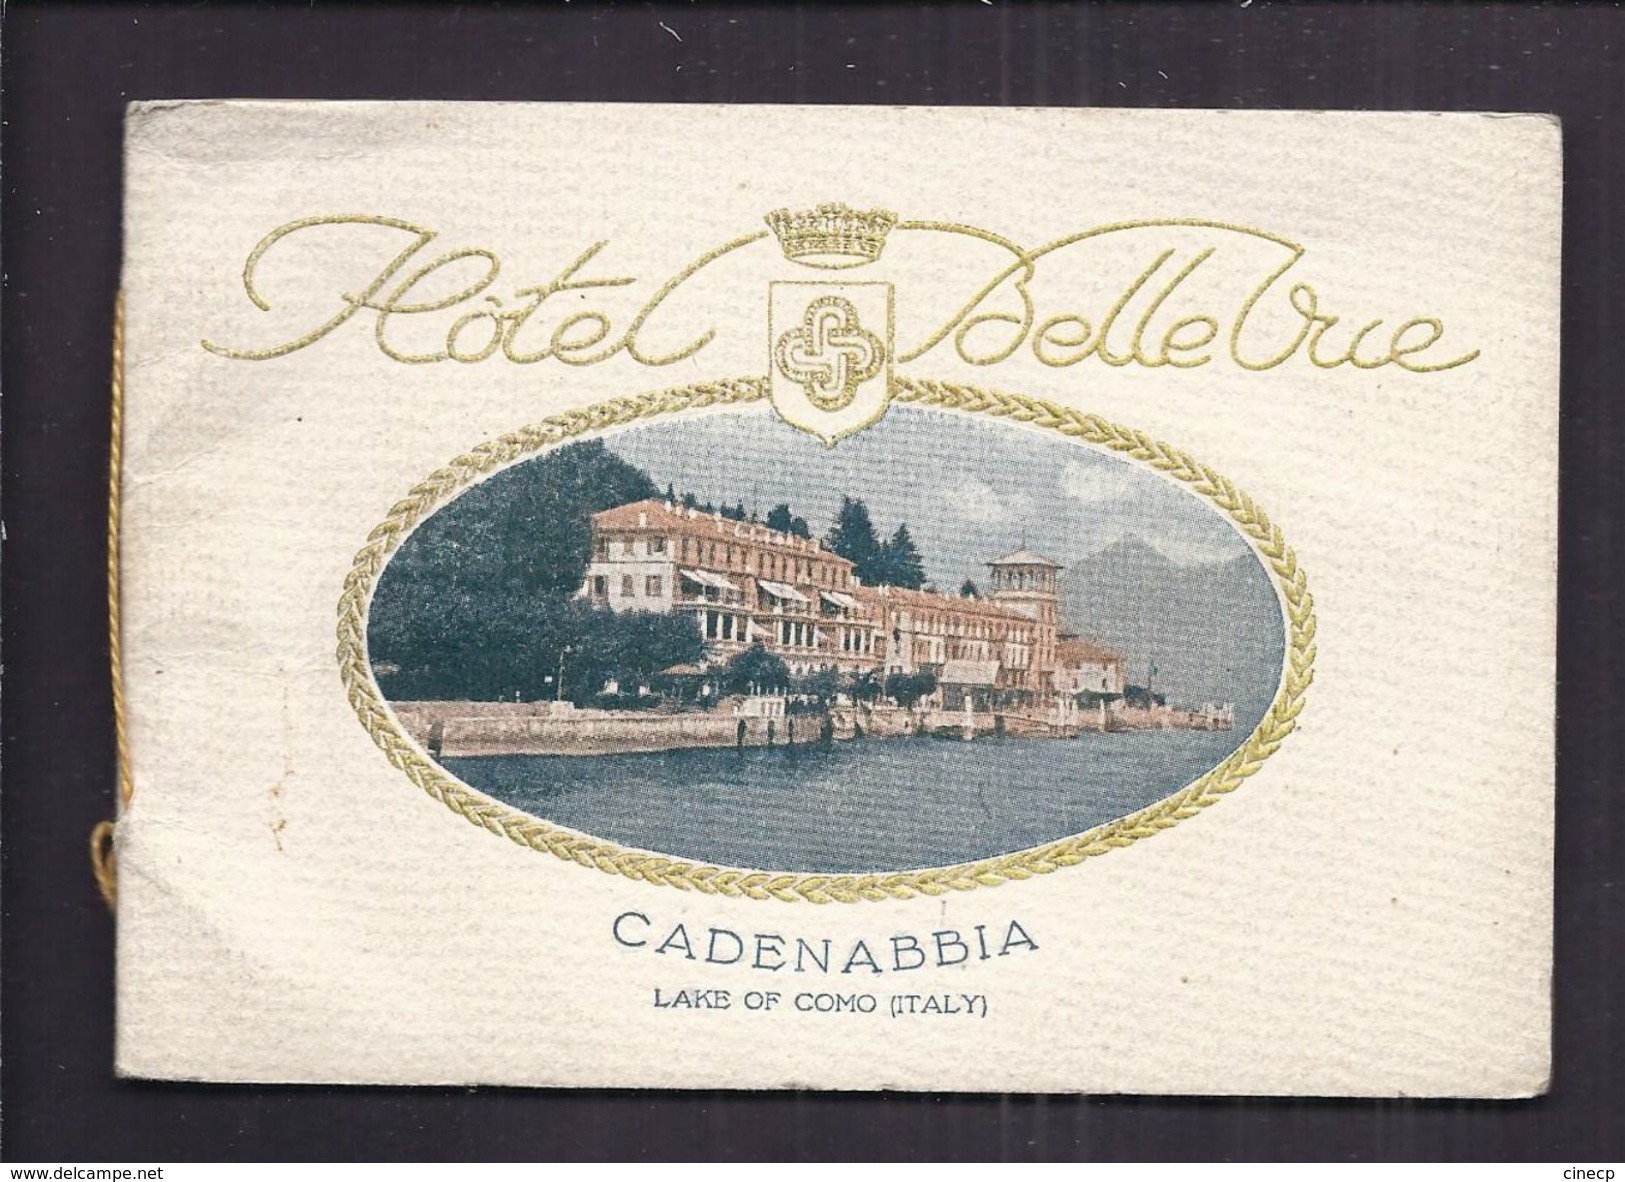 CARNET PUBLICITE ITALIE - HOTEL BELLEVUE CADENABBIA LAC DE COMO - GOLF BATEAU ART NOUVEAU - Dépliants Touristiques